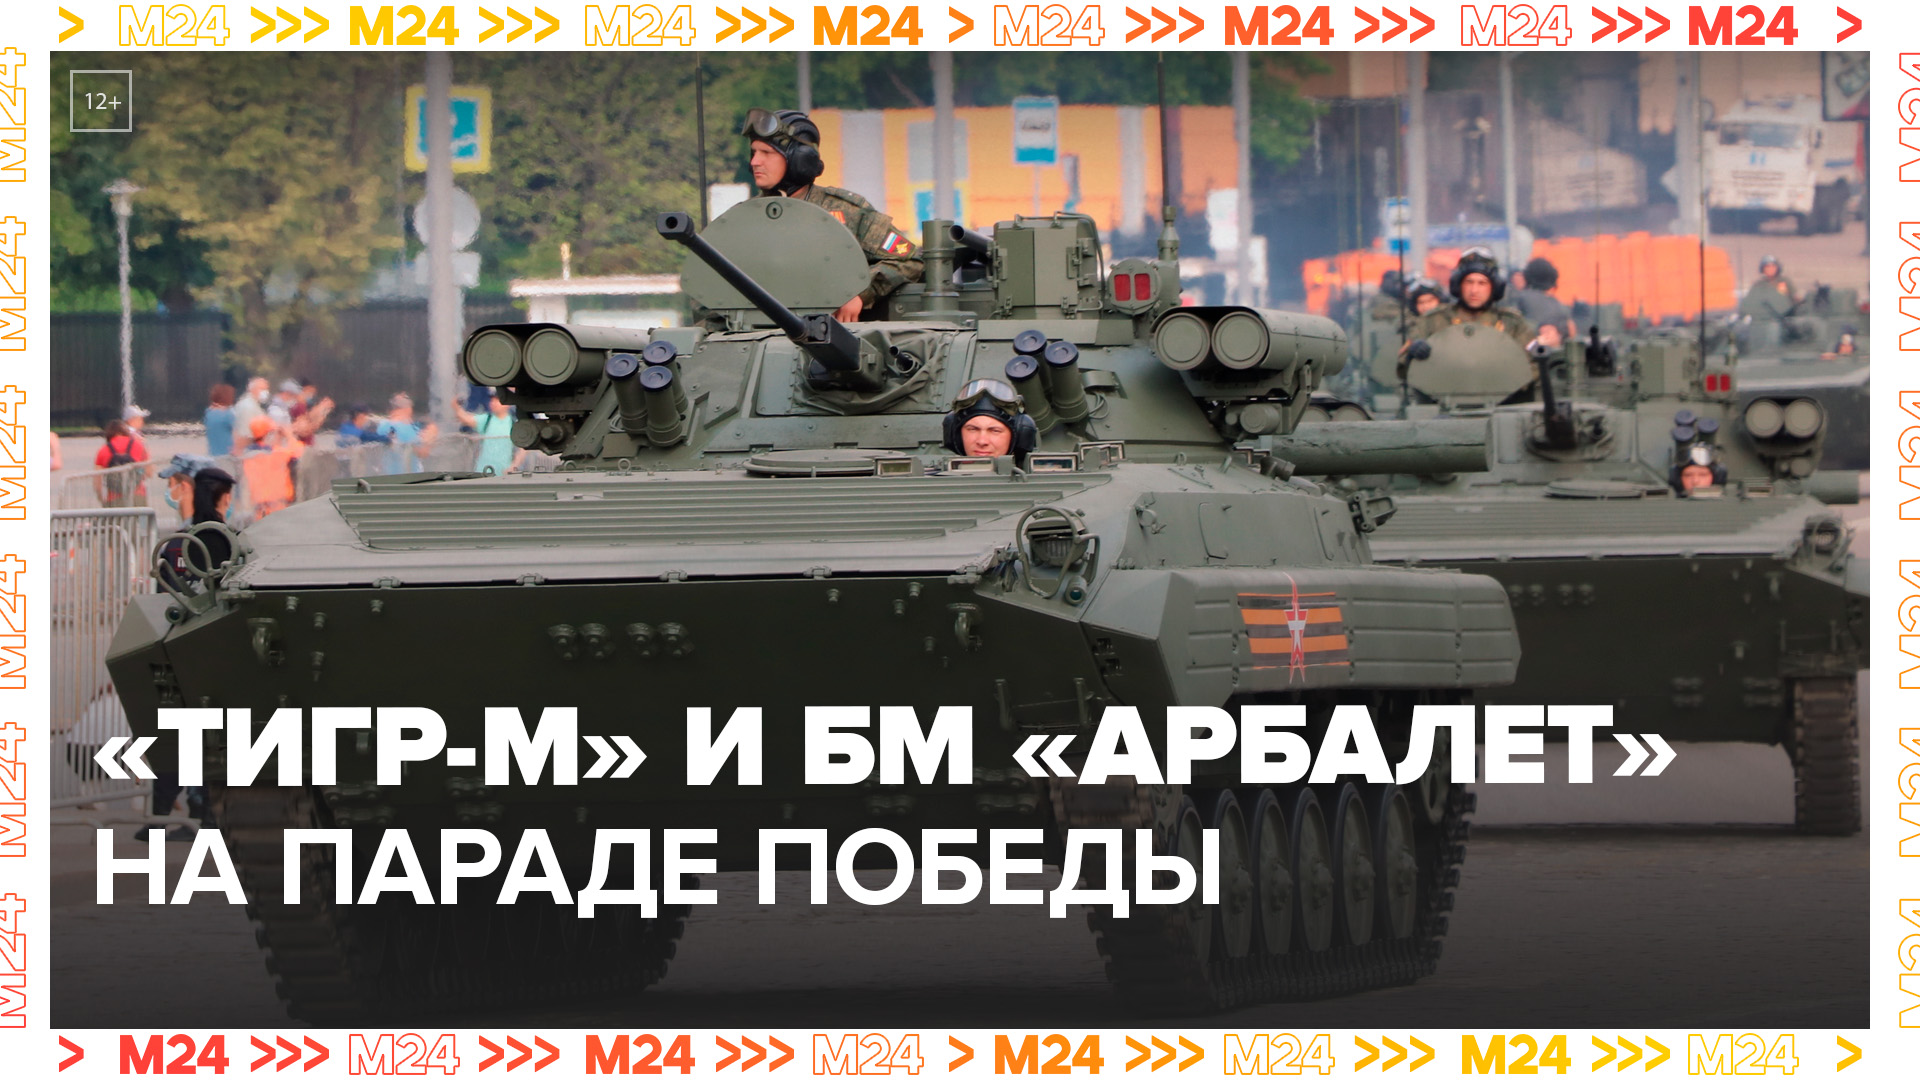 На Параде Победы показали бронеавтомобили - Москва 24